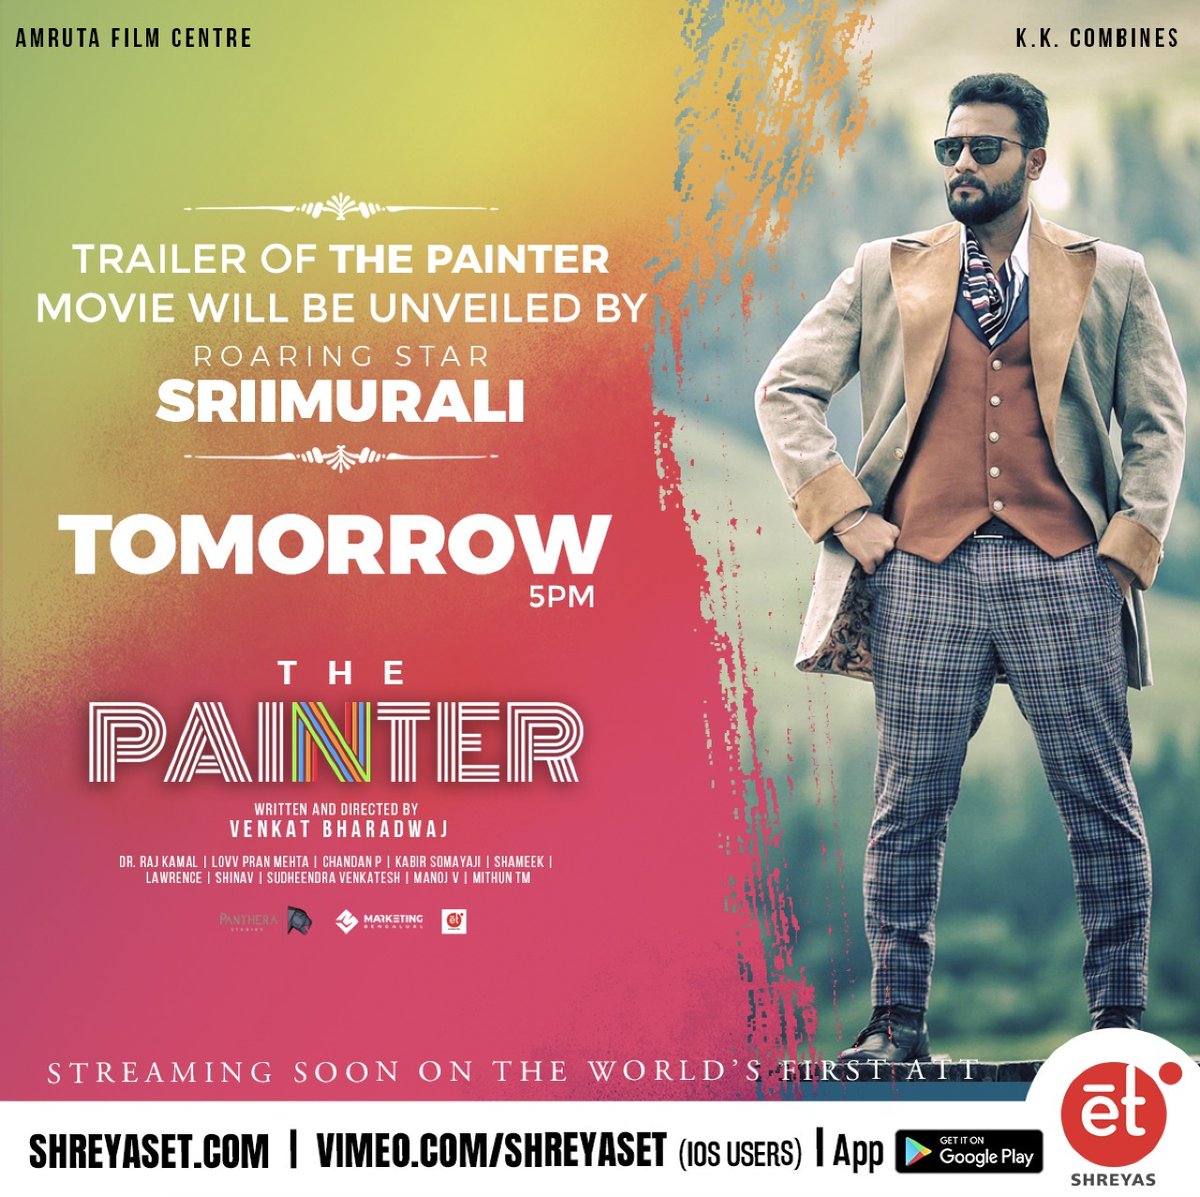 Trailer of the first Kannada film on #WorldsFirstATT @ShreyasET, #ThePainter is going to be launched by #RoaringStar @SriiMurali on 7 Aug 2020.

Stay tuned to us!

#NewAgeThriller #VenkatBharadwaj #SriiMurali #ShreyasET